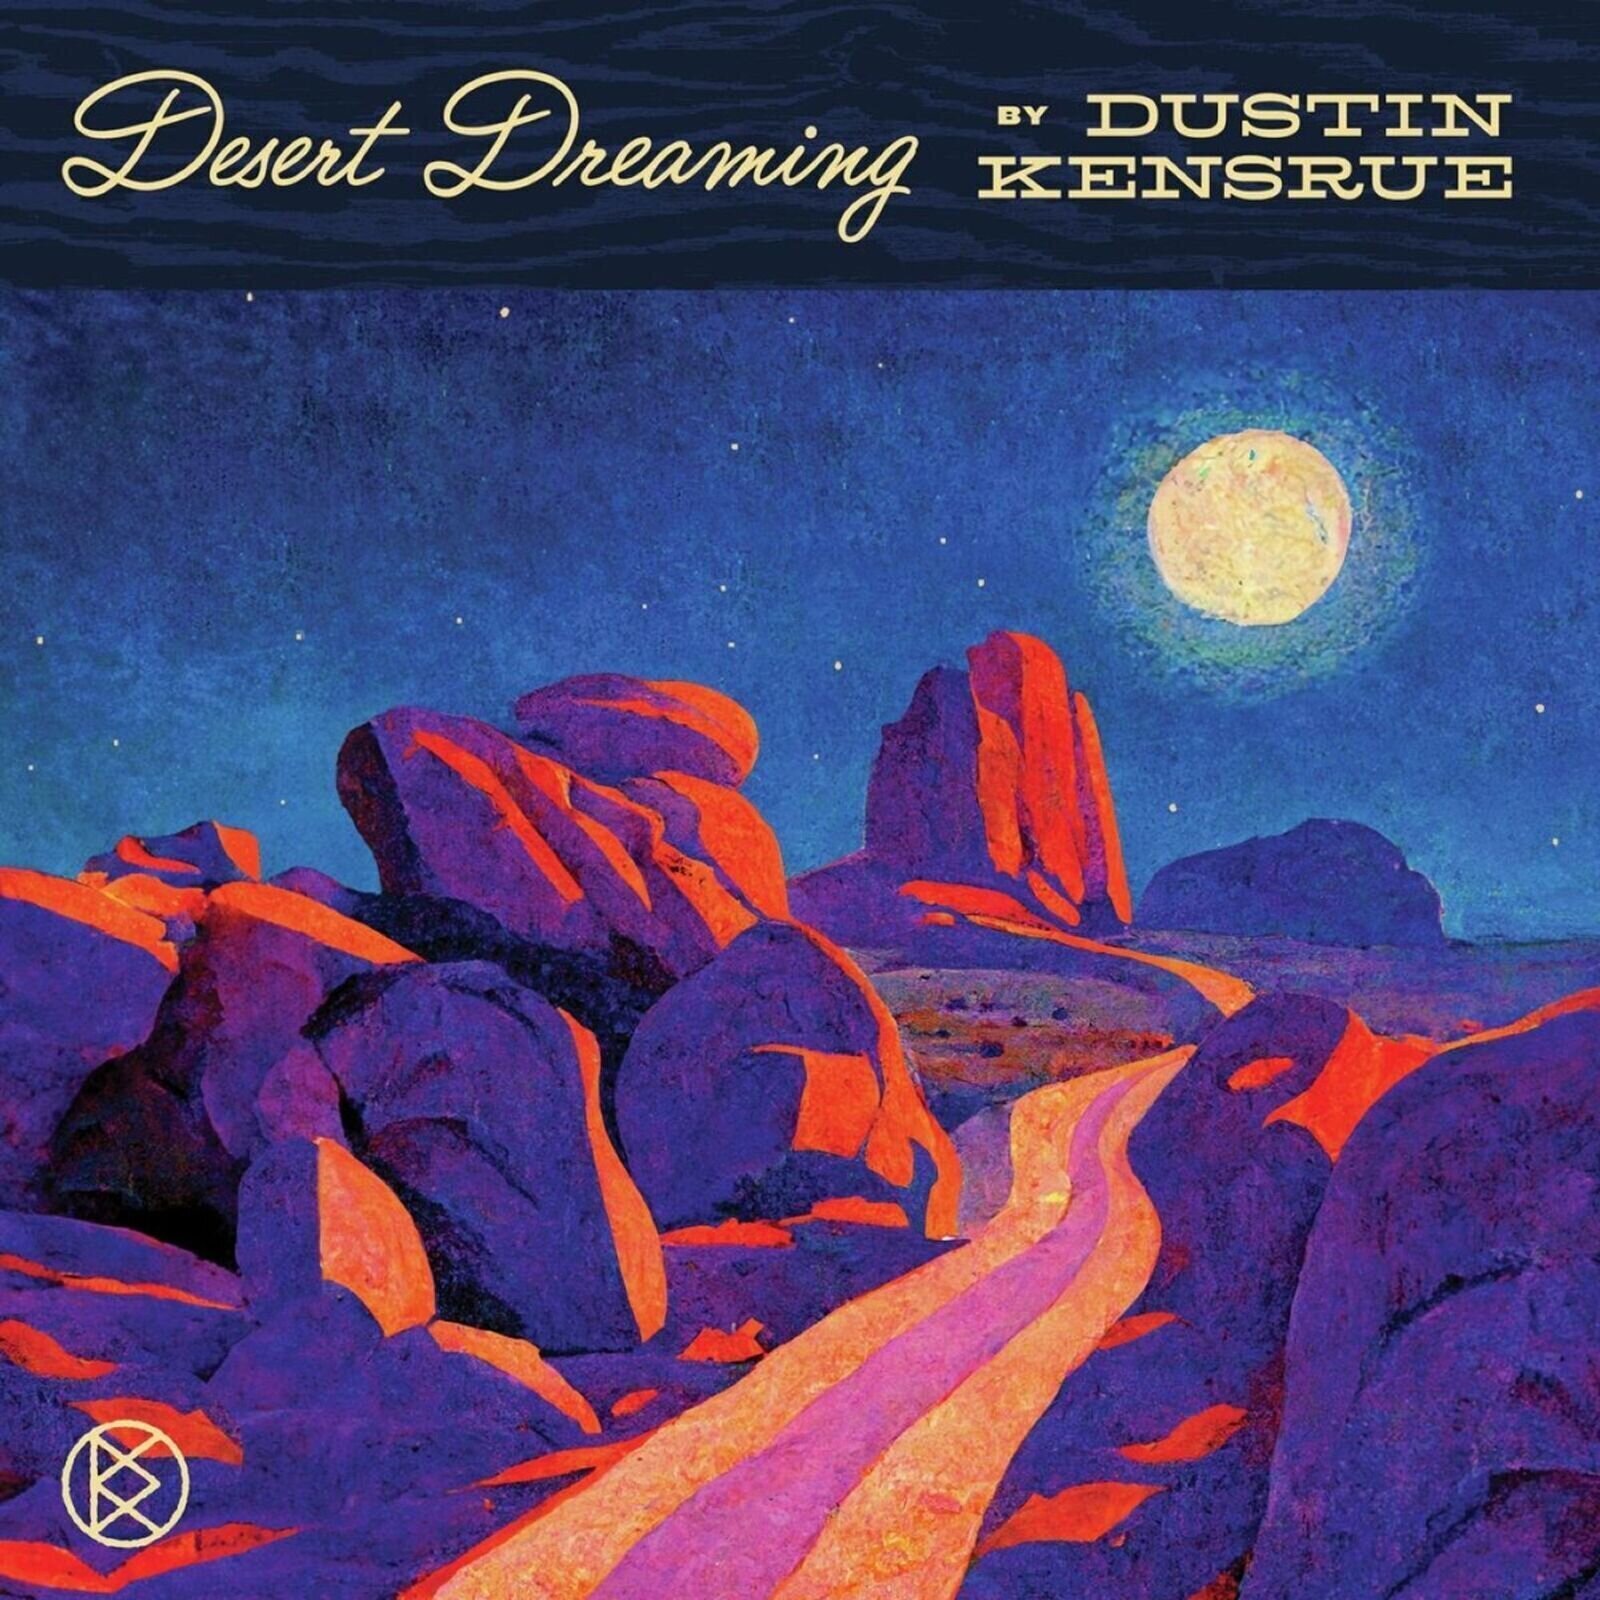 Glasbene CD Dustin Kensrue - Desert Dreaming (CD)